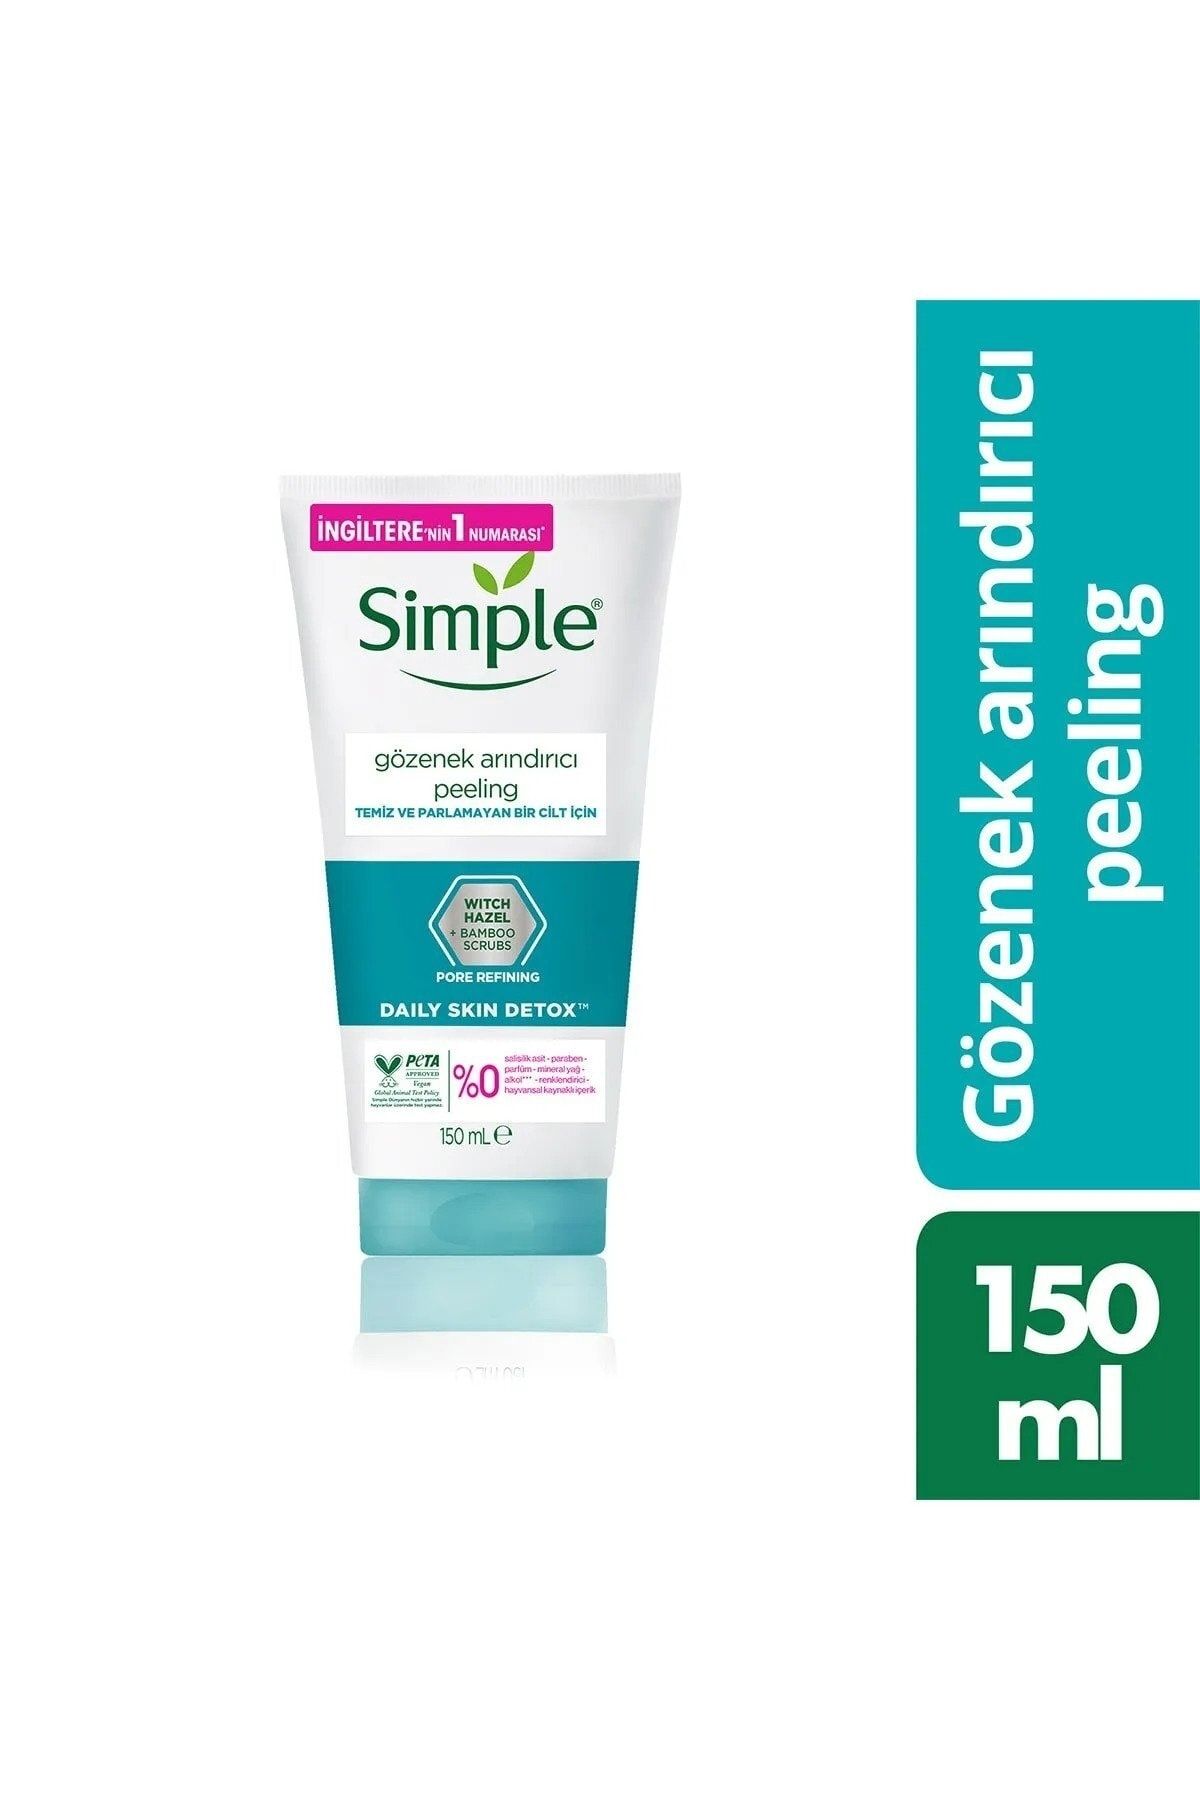 Simple Daily Skin Detox Gözenek Arındırıcı Peeling Temiz Ve Parlamayan Bir Cilt Için 150 Ml